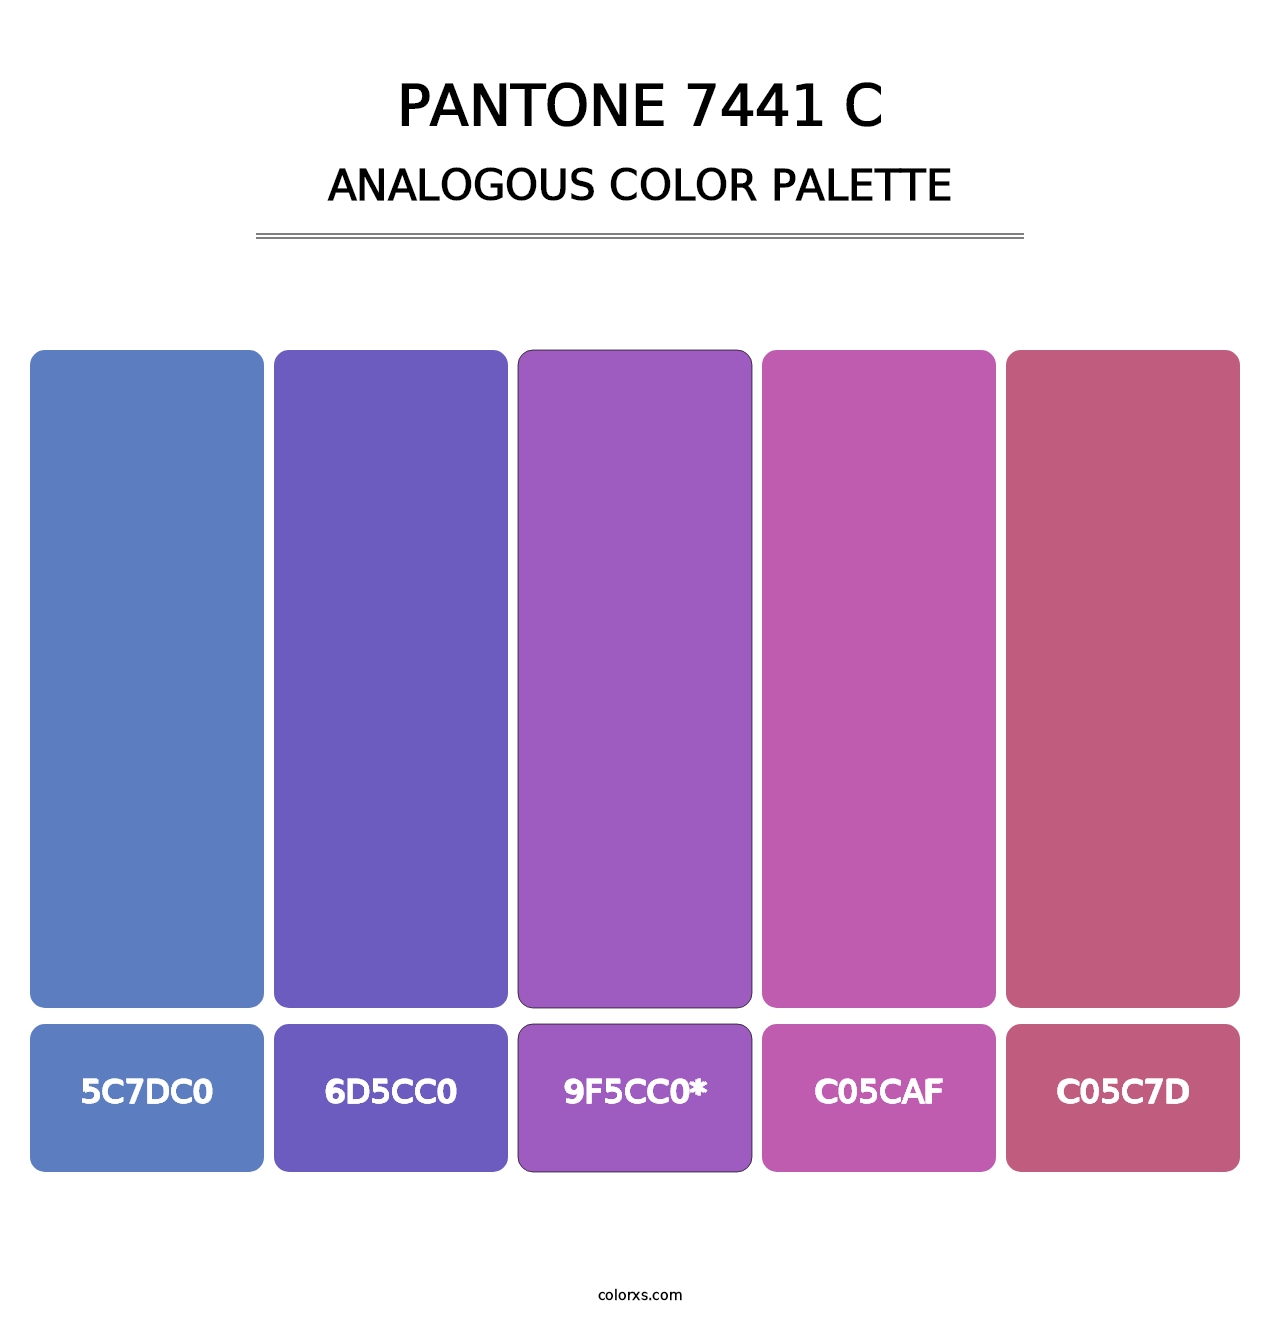 PANTONE 7441 C - Analogous Color Palette